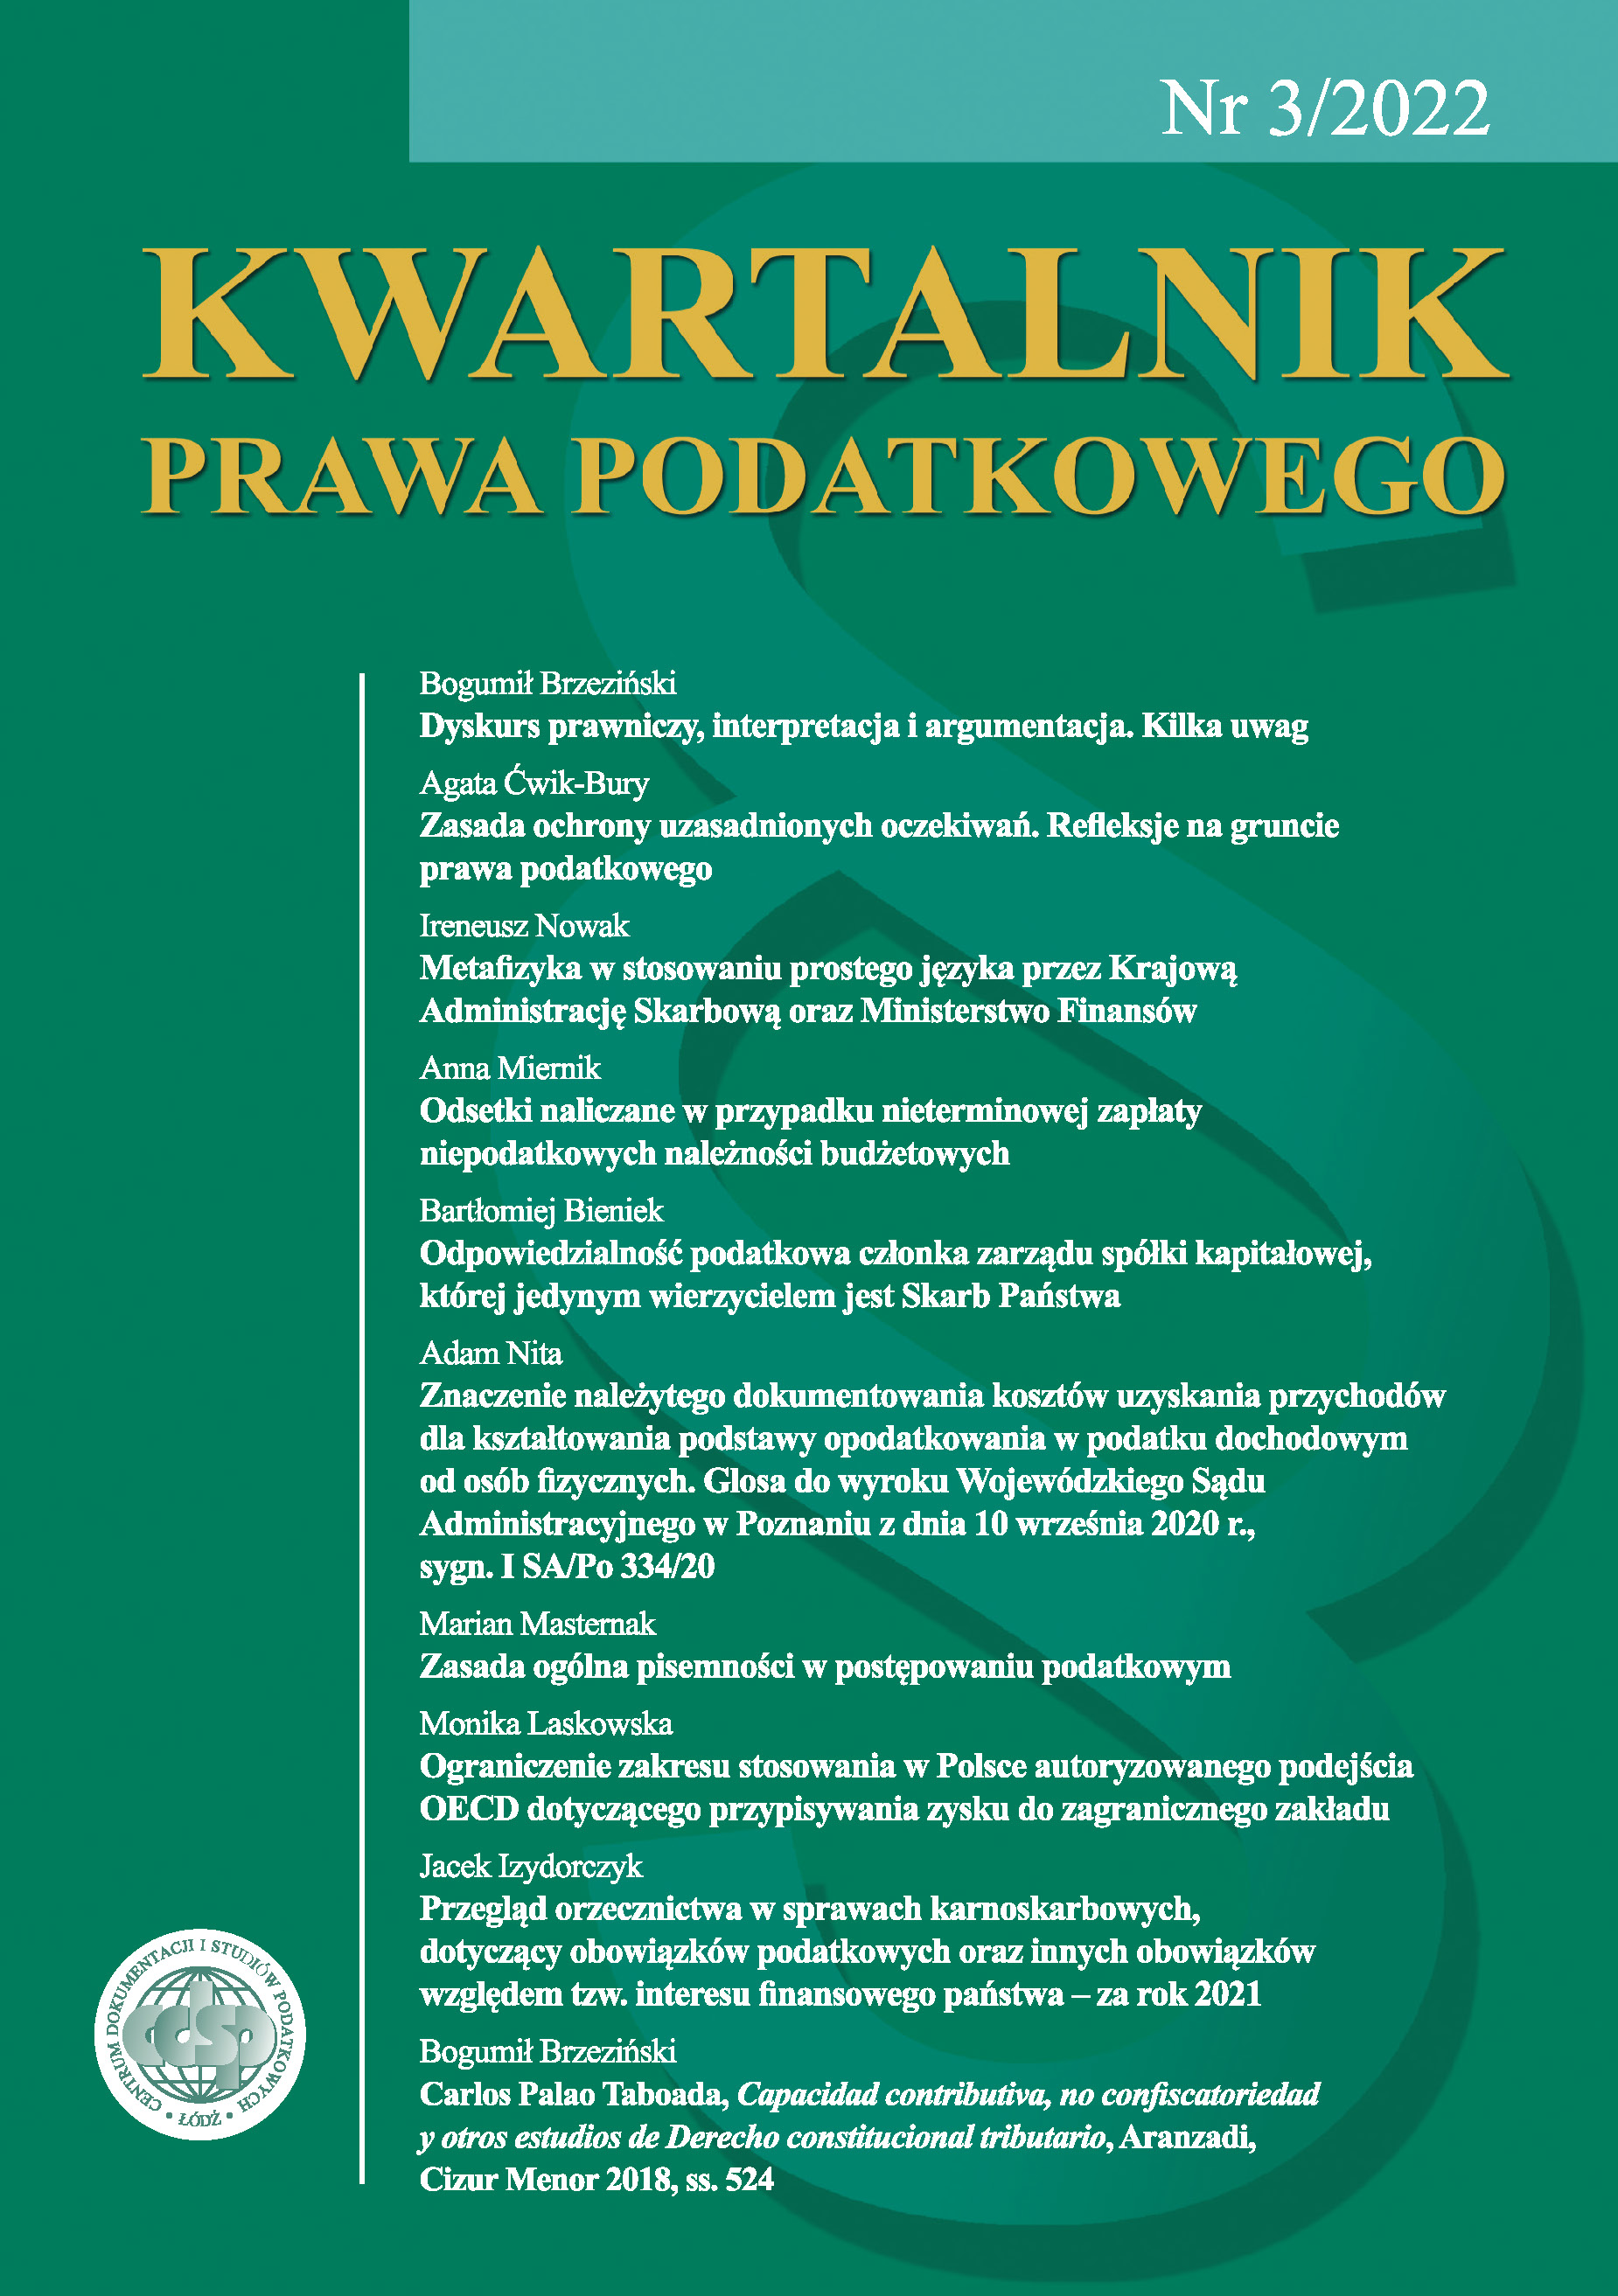 Ograniczenie zakresu stosowania w Polsce autoryzowanego podejścia OECD dotyczącego przypisywania zysku do zagranicznego zakładu